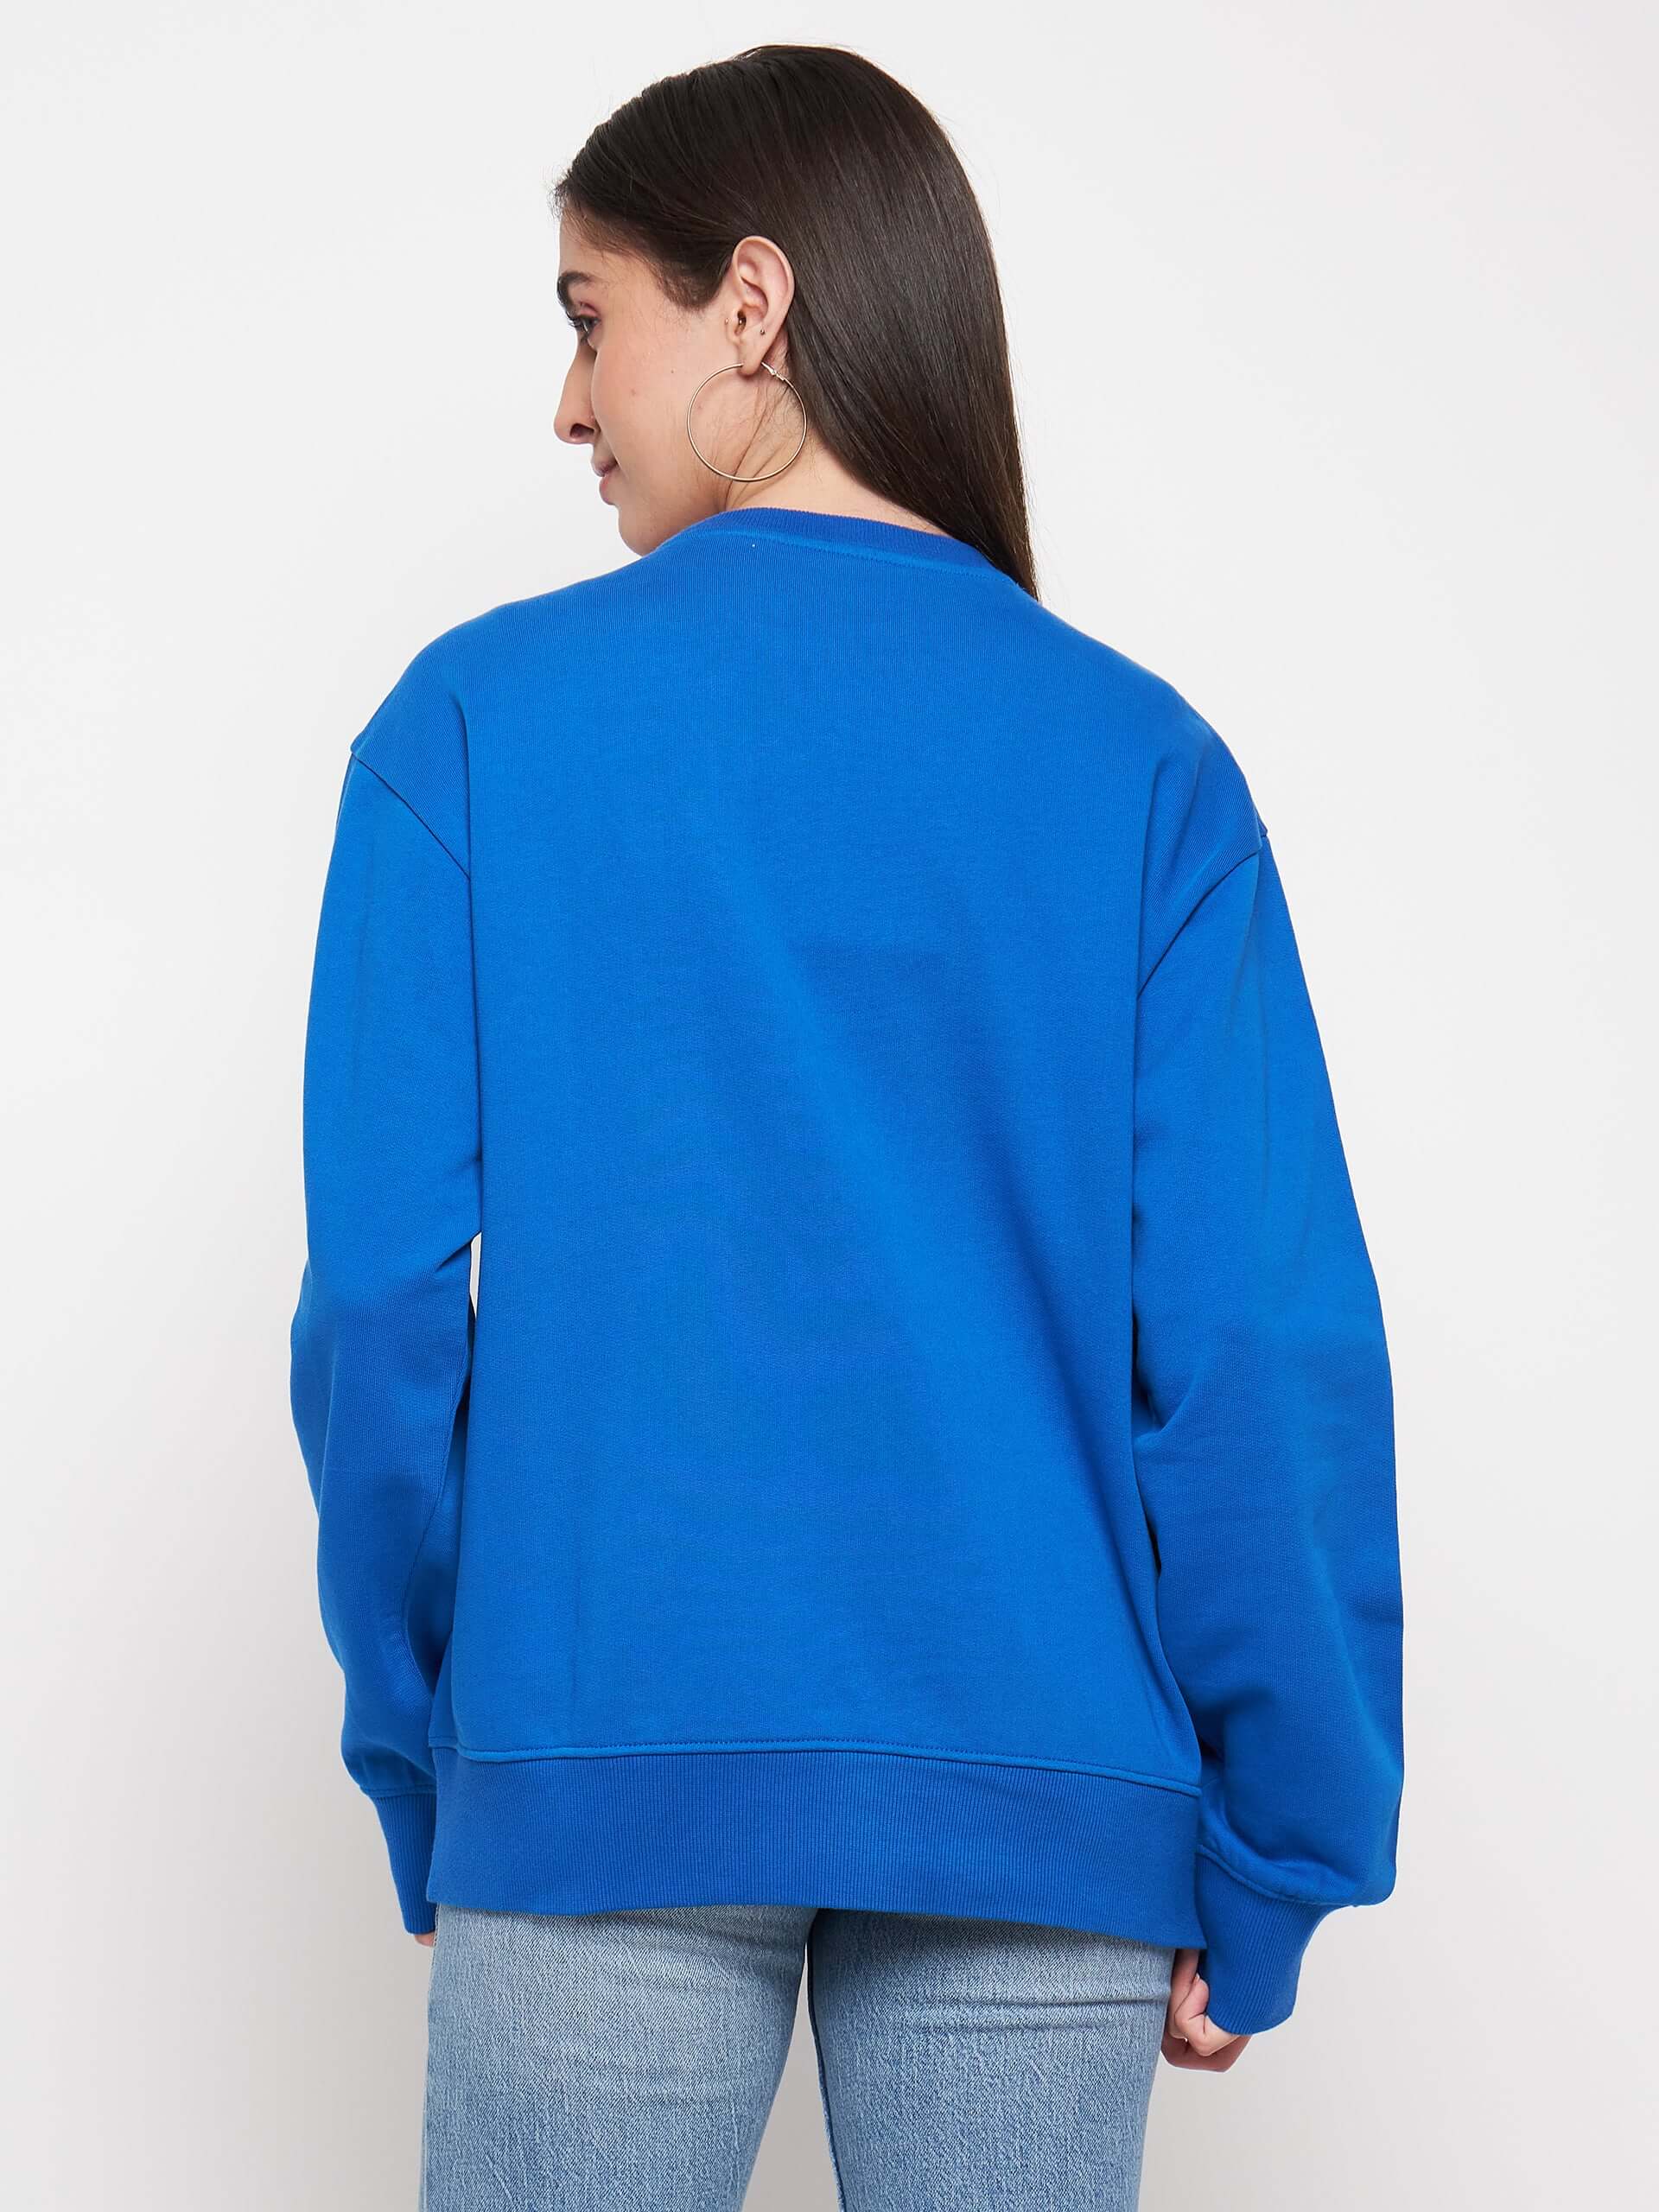 Women's Round Neck Embellished Sweatshirt - Antimony